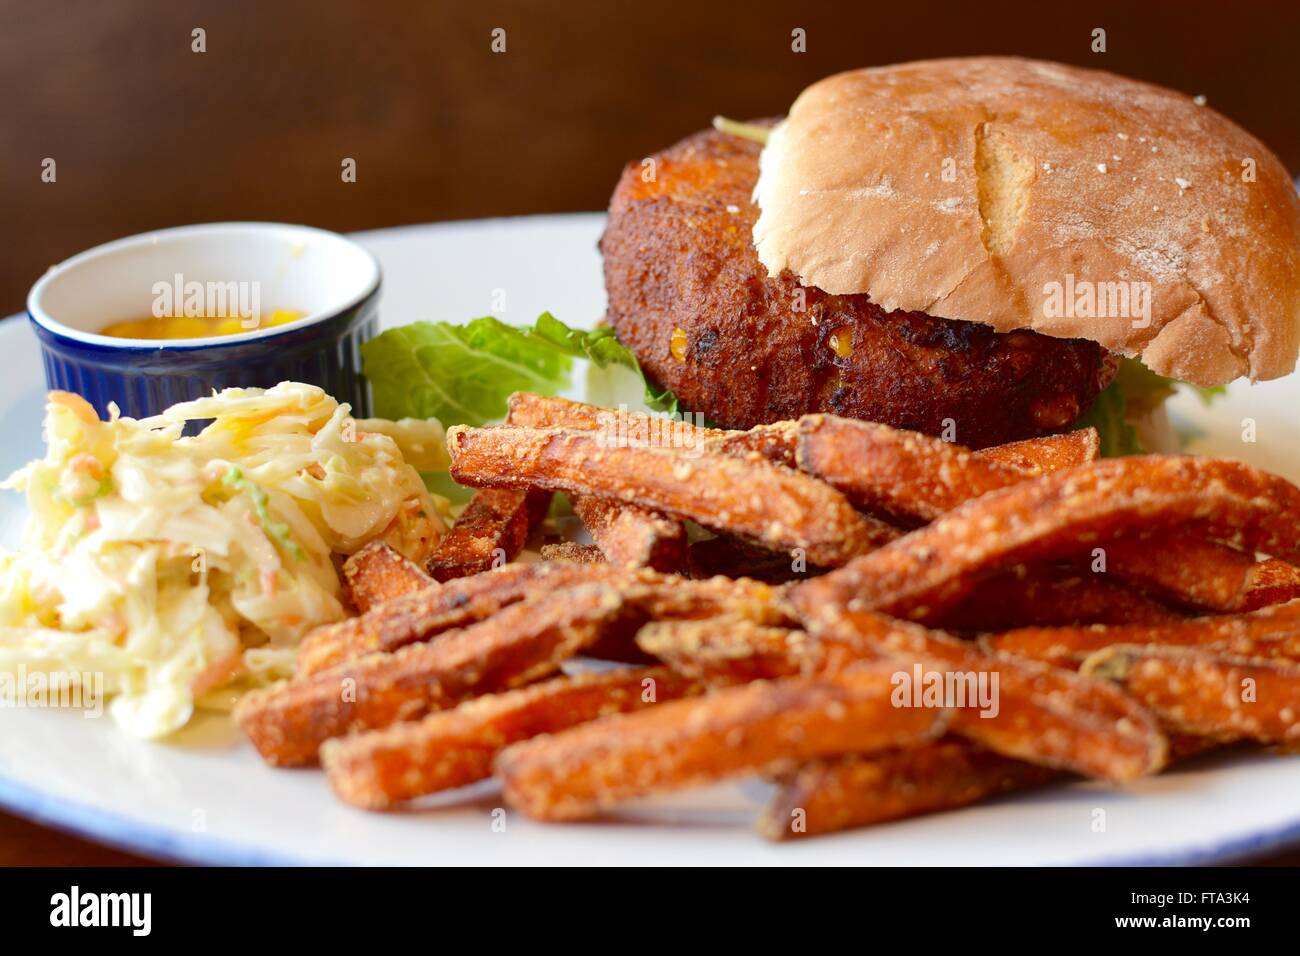 Hamburger vegetali in un panino con patate dolci patatine fritte, coleslaw e assaporare Foto Stock